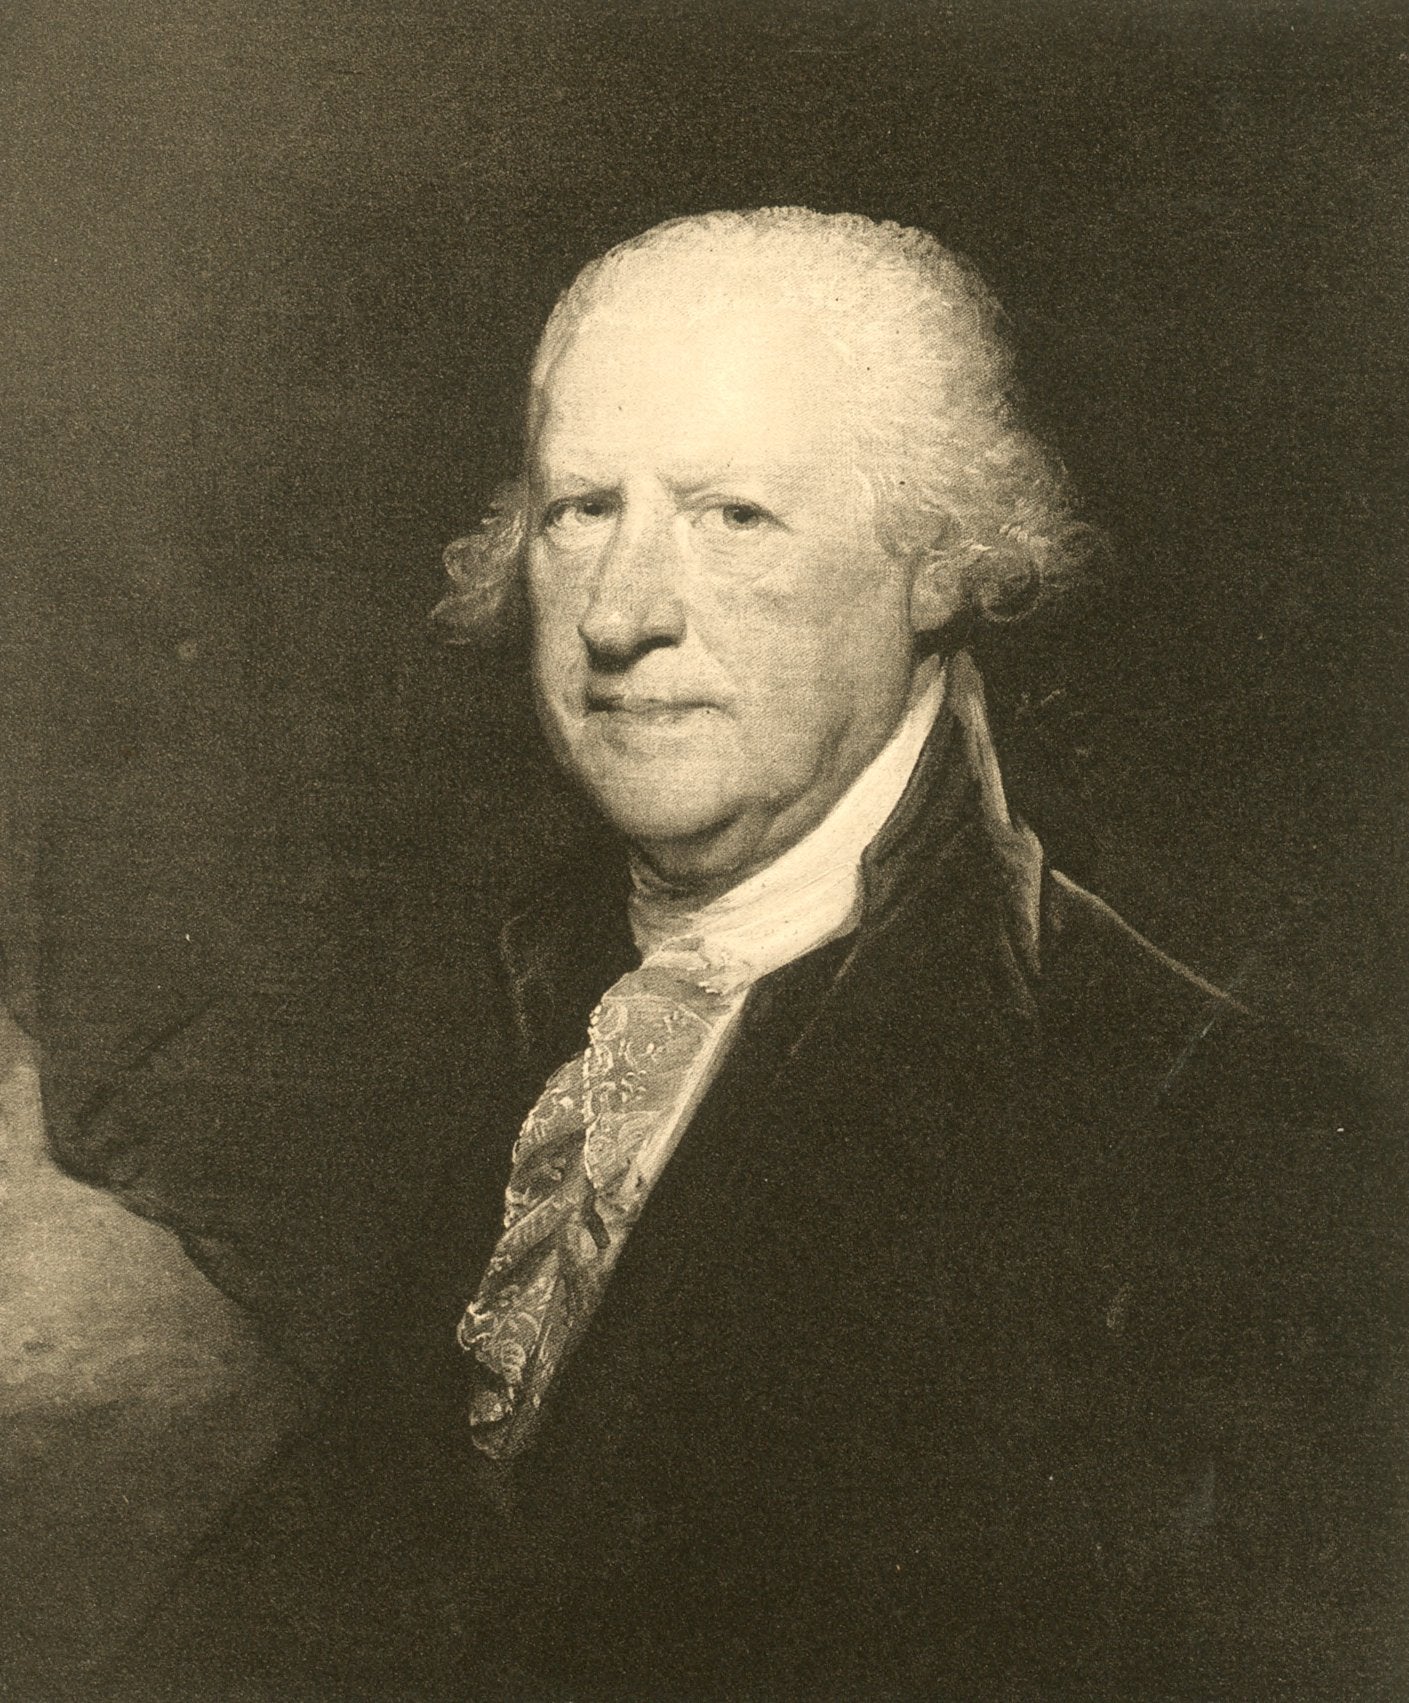 Edward Shippen, c. 1780